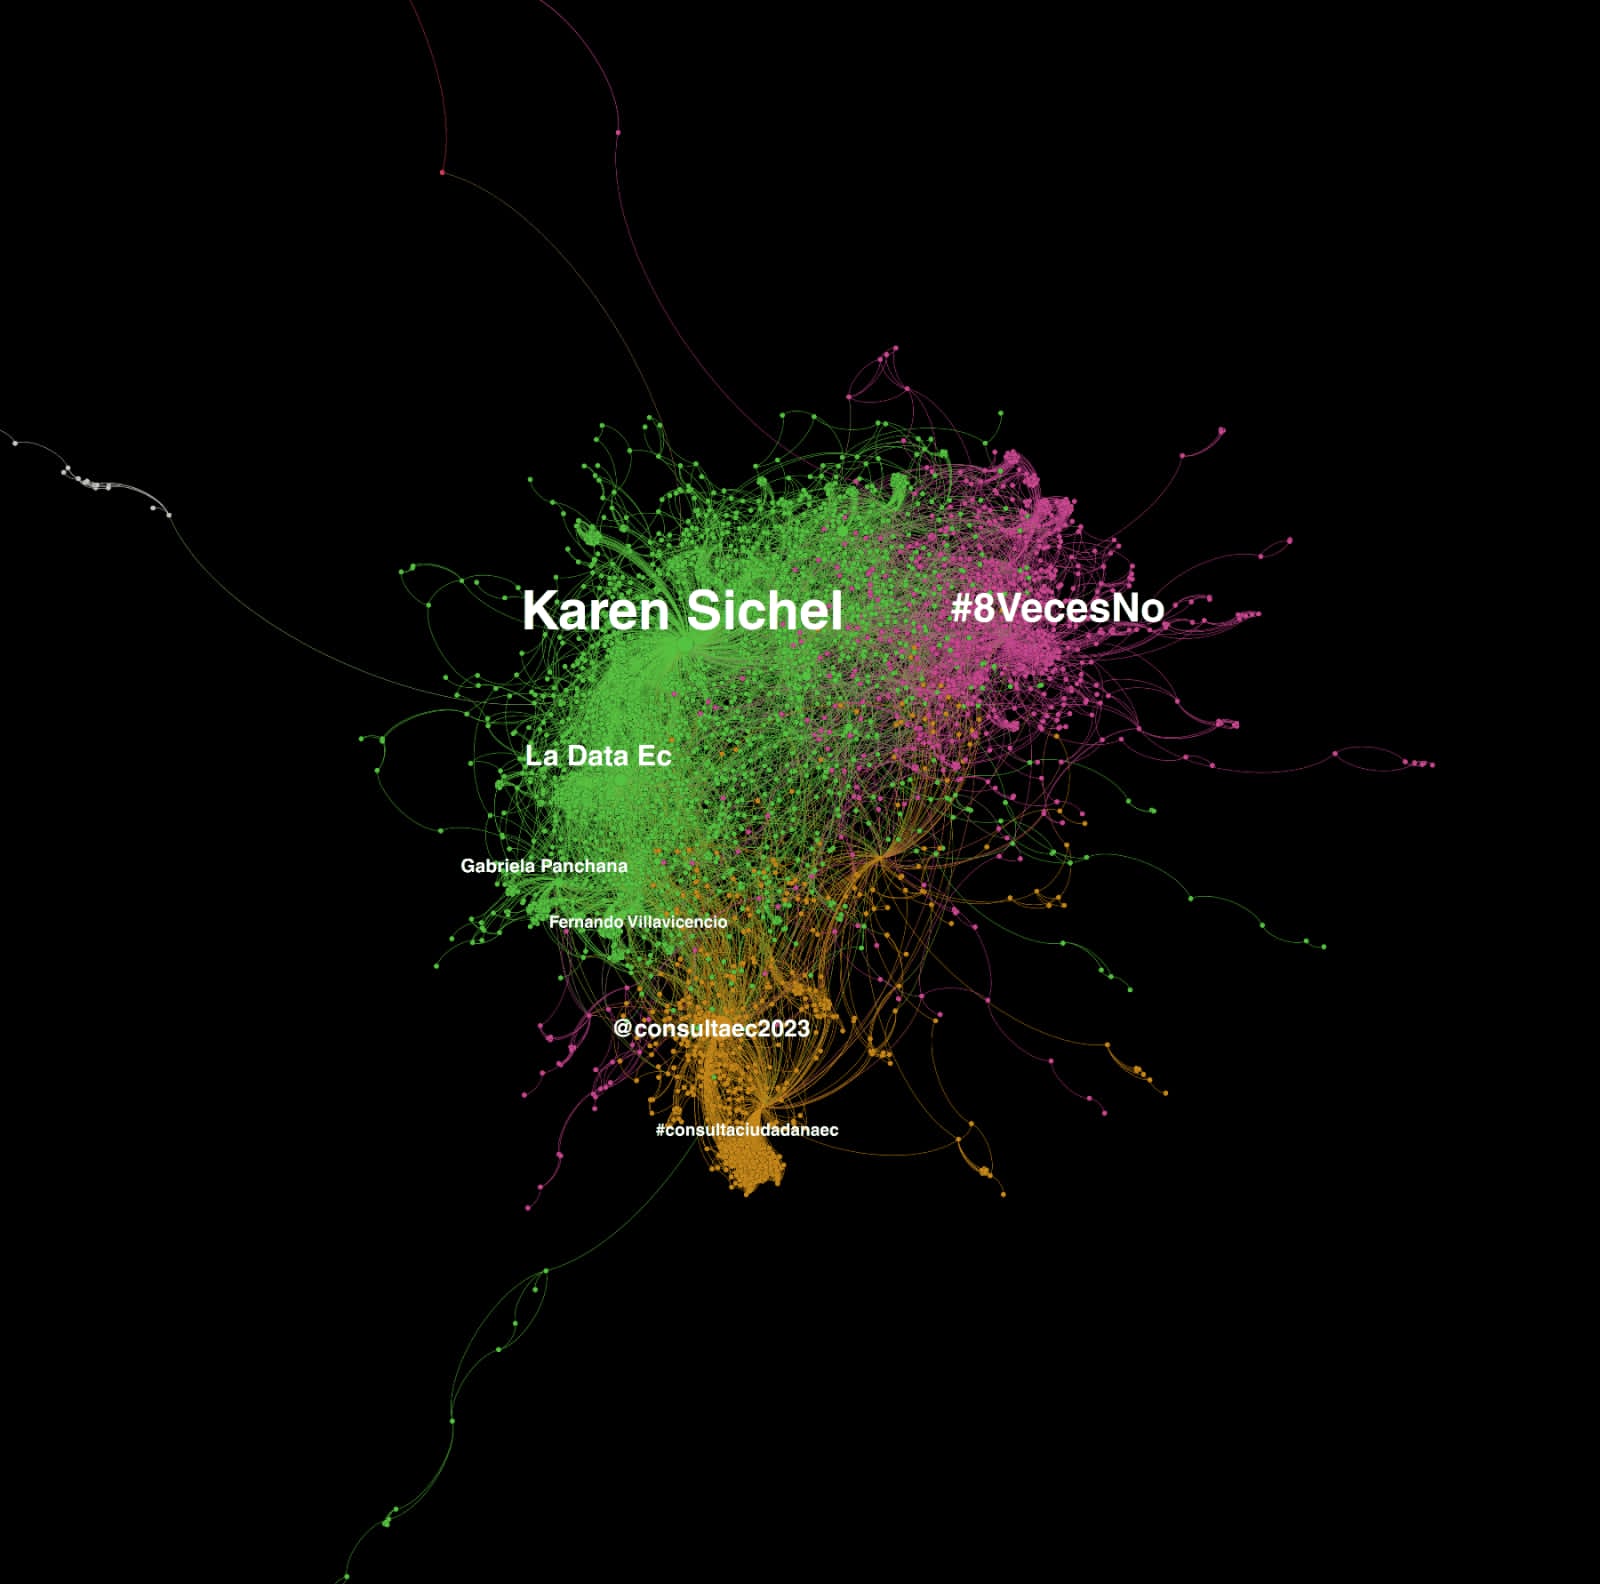 Pie de foto: El apoyo al sí gira entorno a Karen Sichel en redes